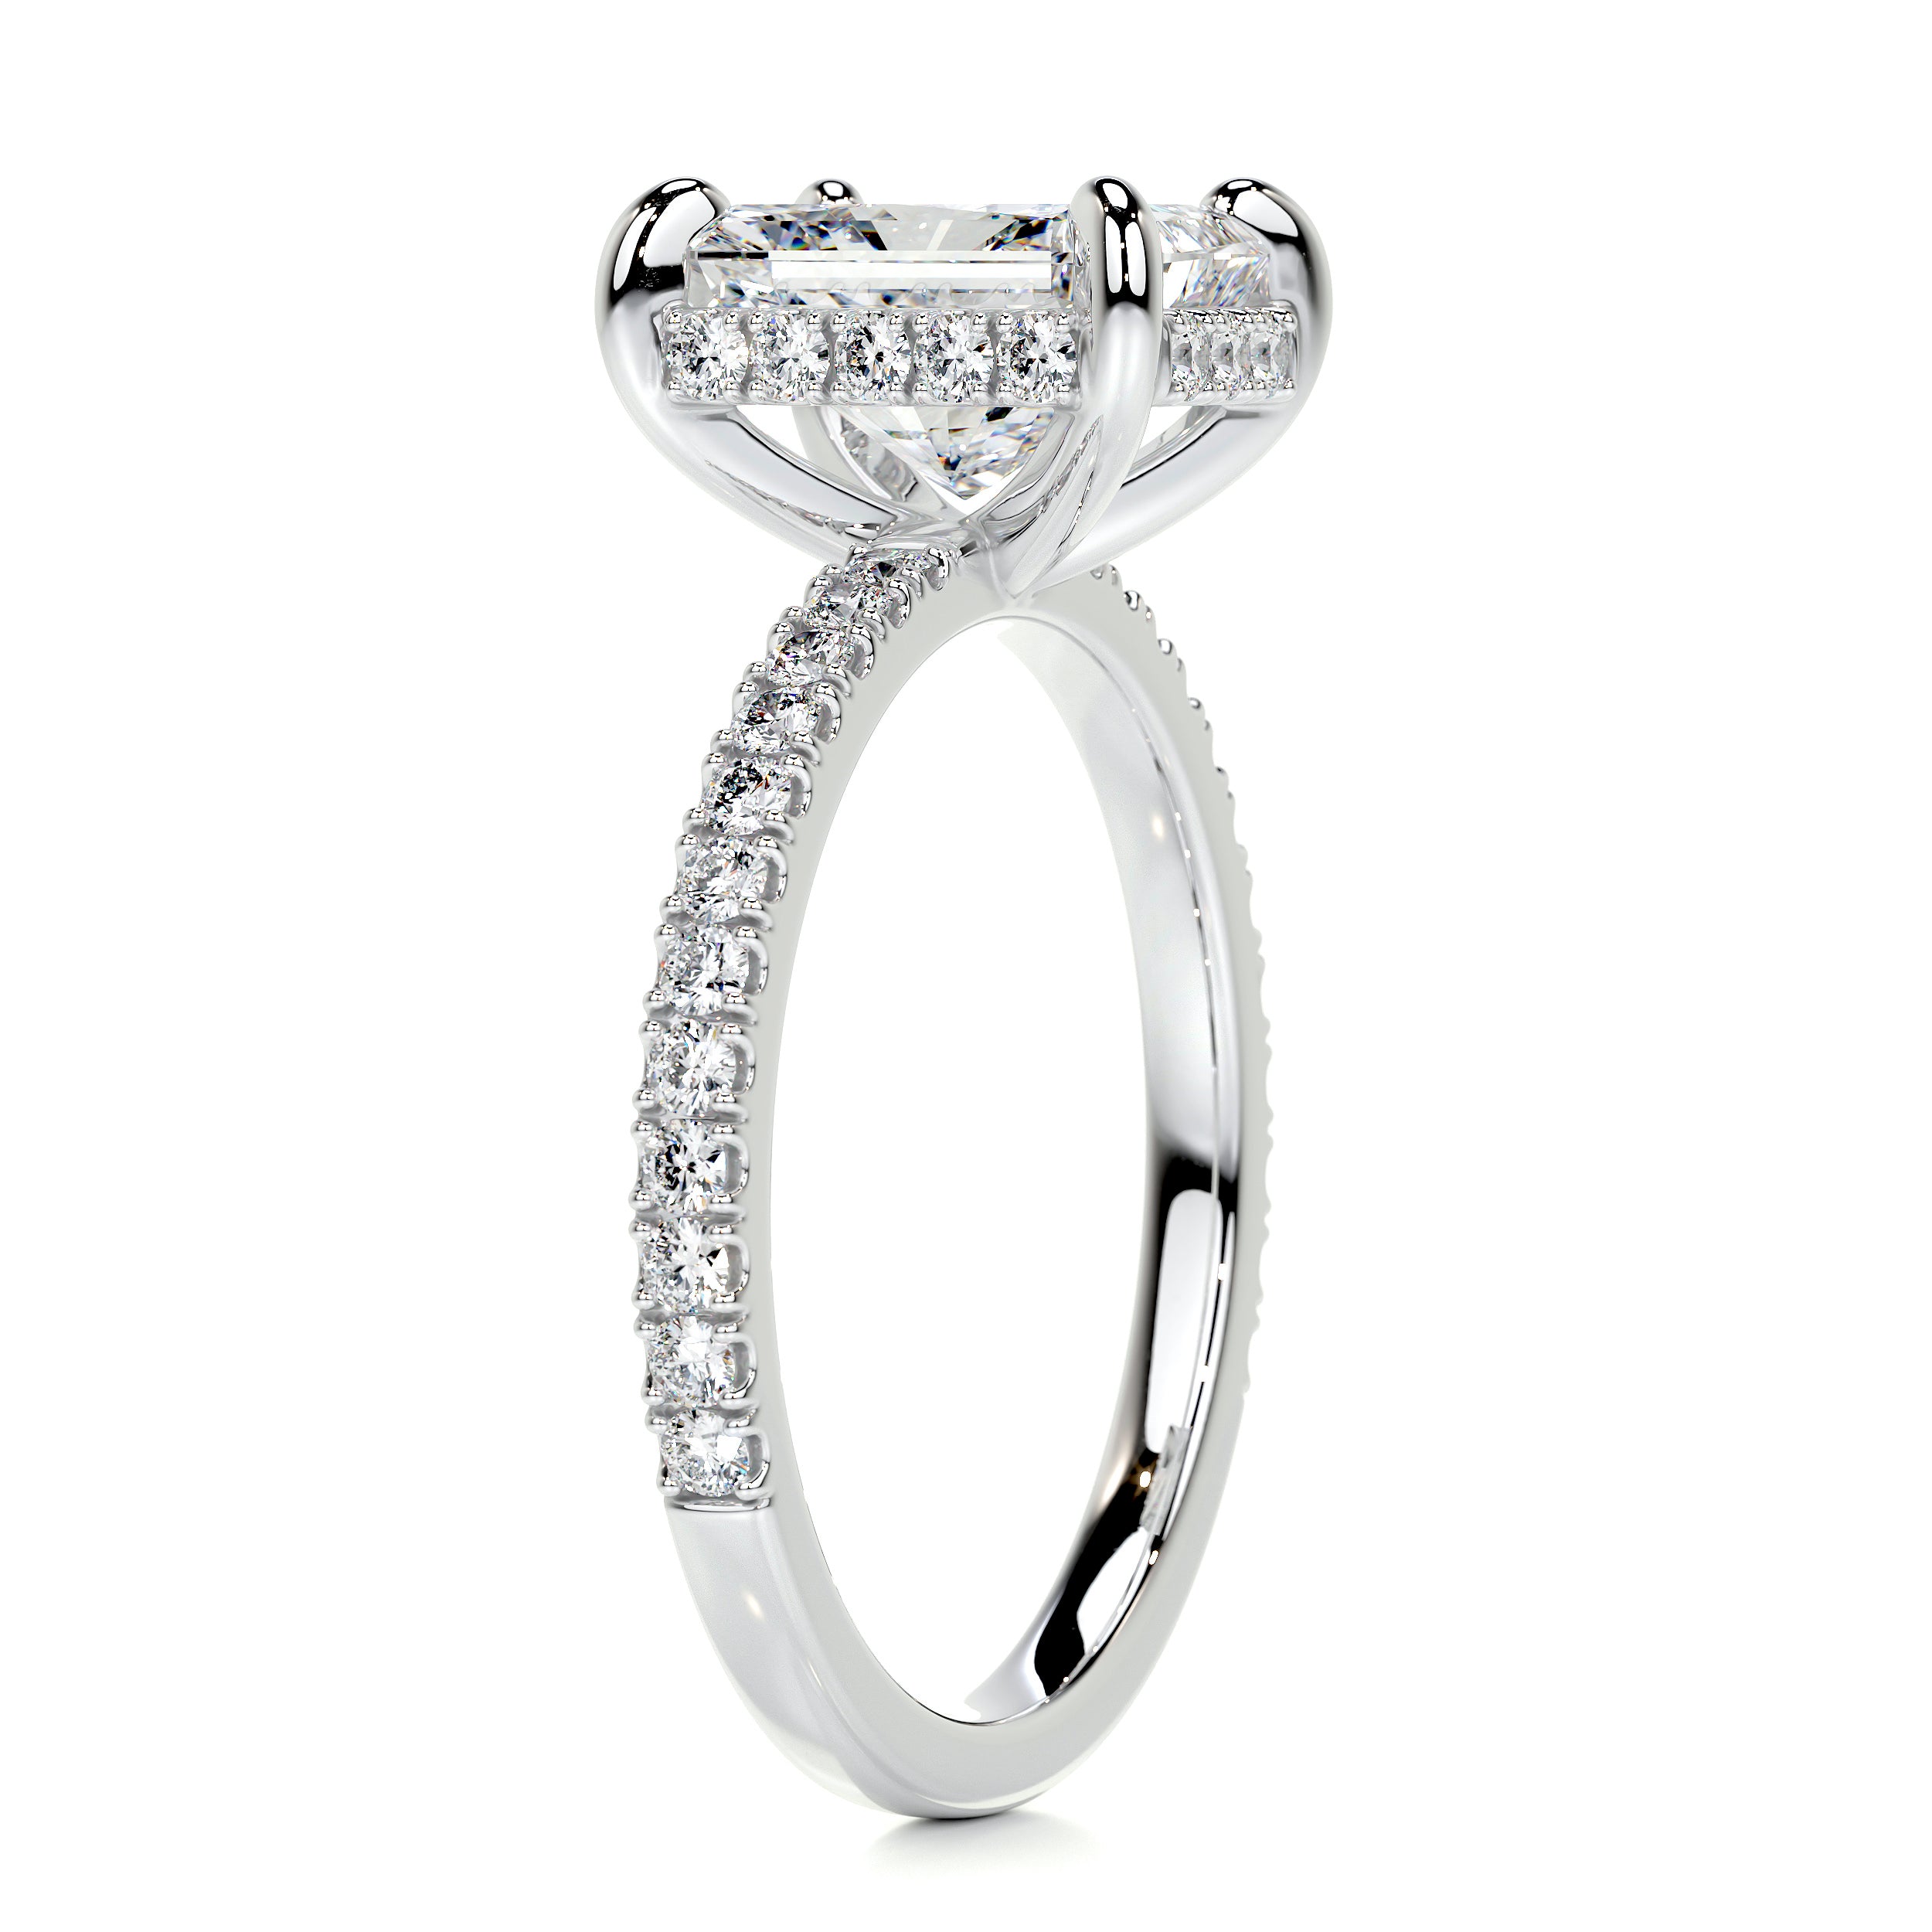 Luna Diamond Engagement Ring   (2 Carat) -Platinum